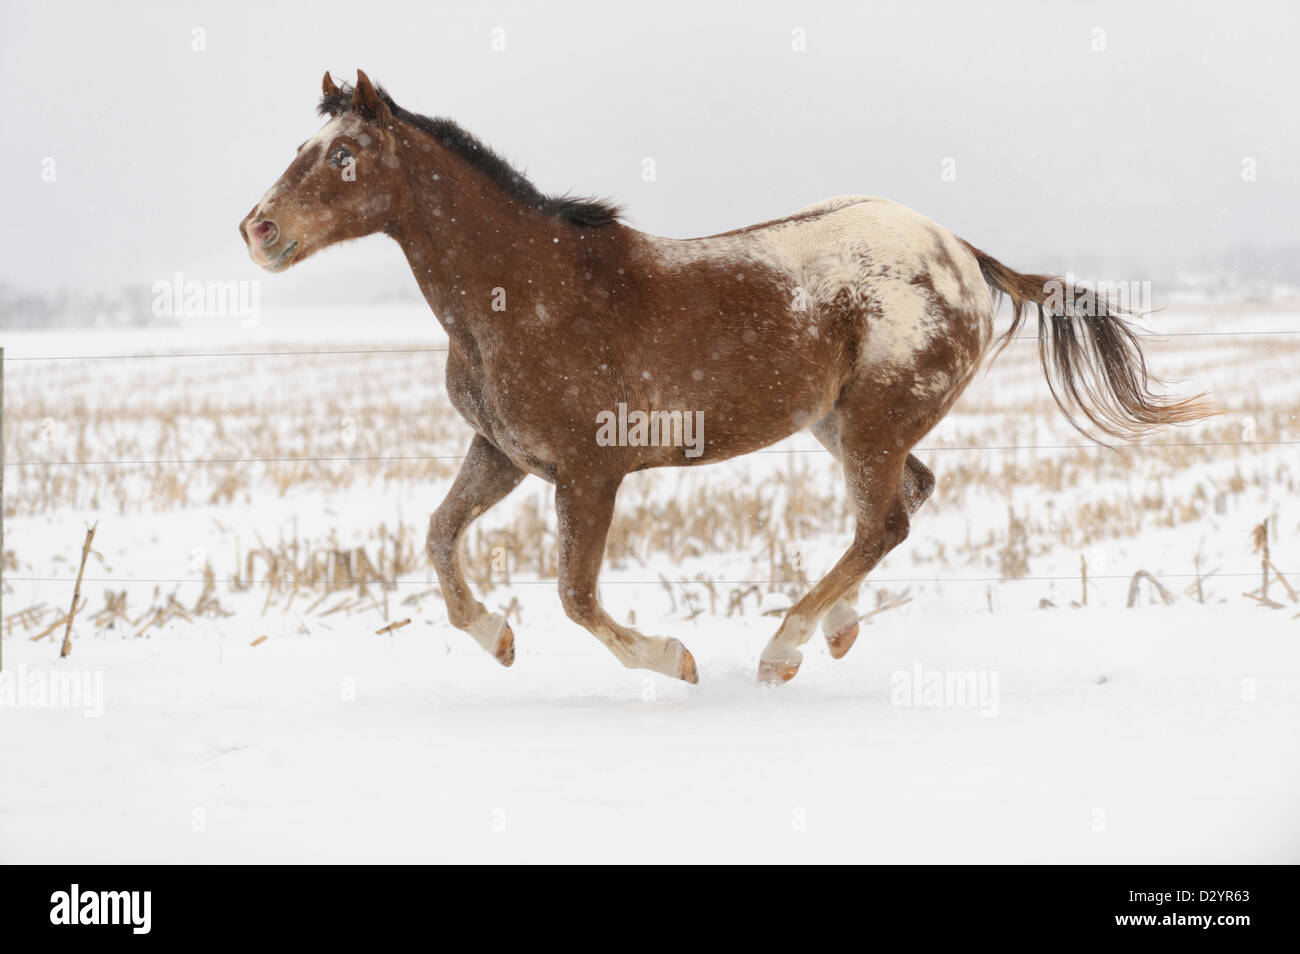 Appaloosa Horse running free en ms dans les pâturages d'hiver blanc et des chutes de neige, ouvrir champ agricole du paysage. Banque D'Images